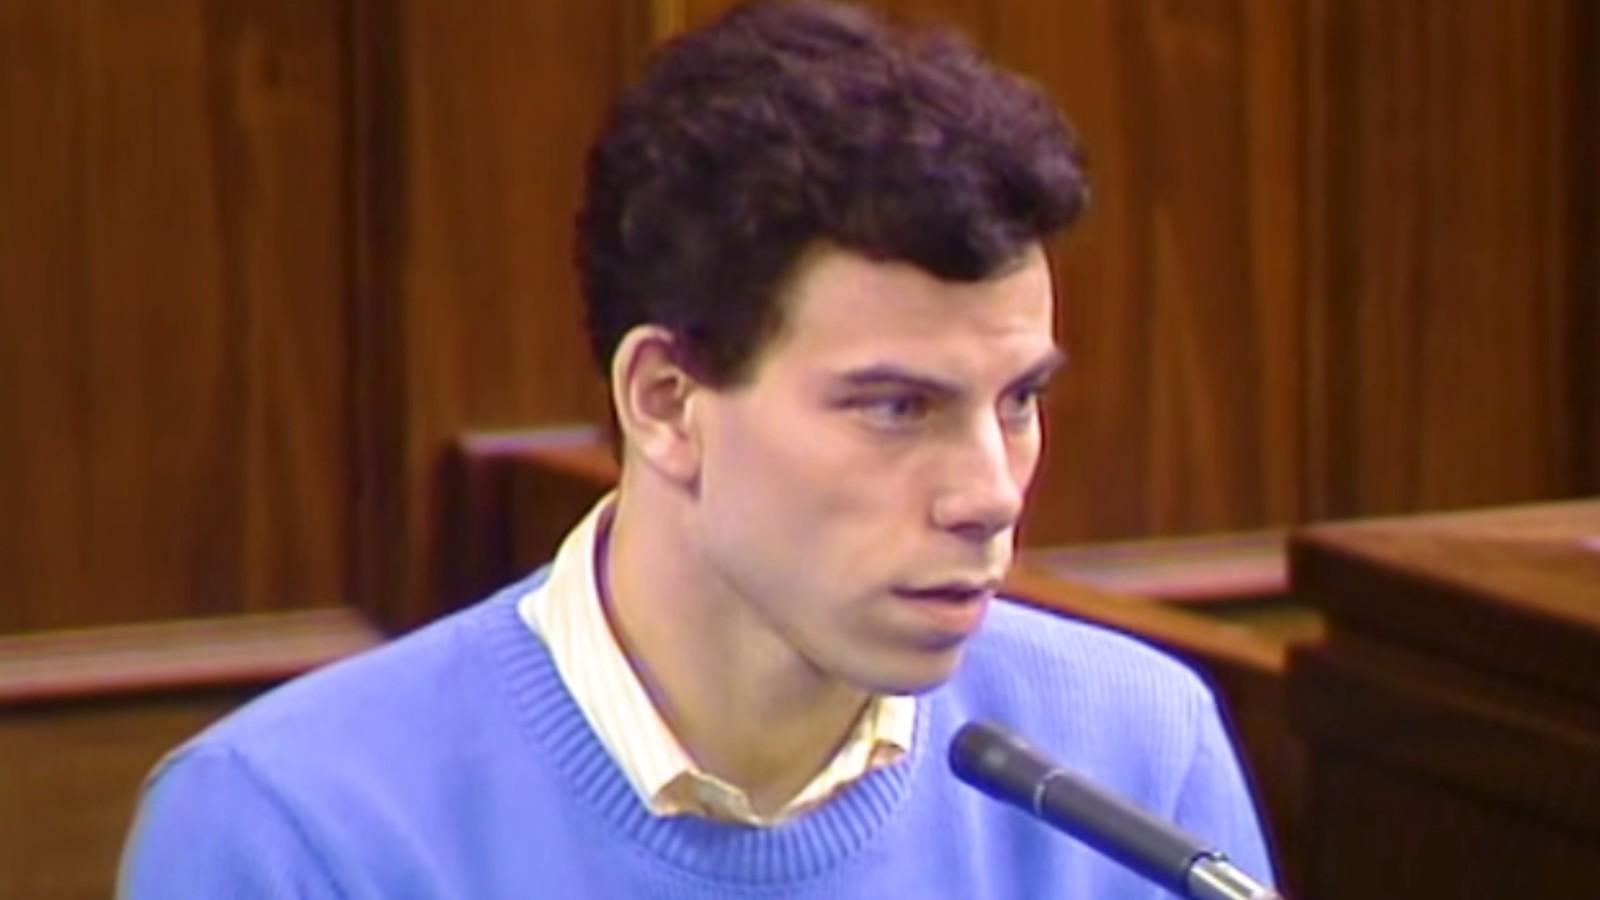 Erik Menendez in the 1993 trial